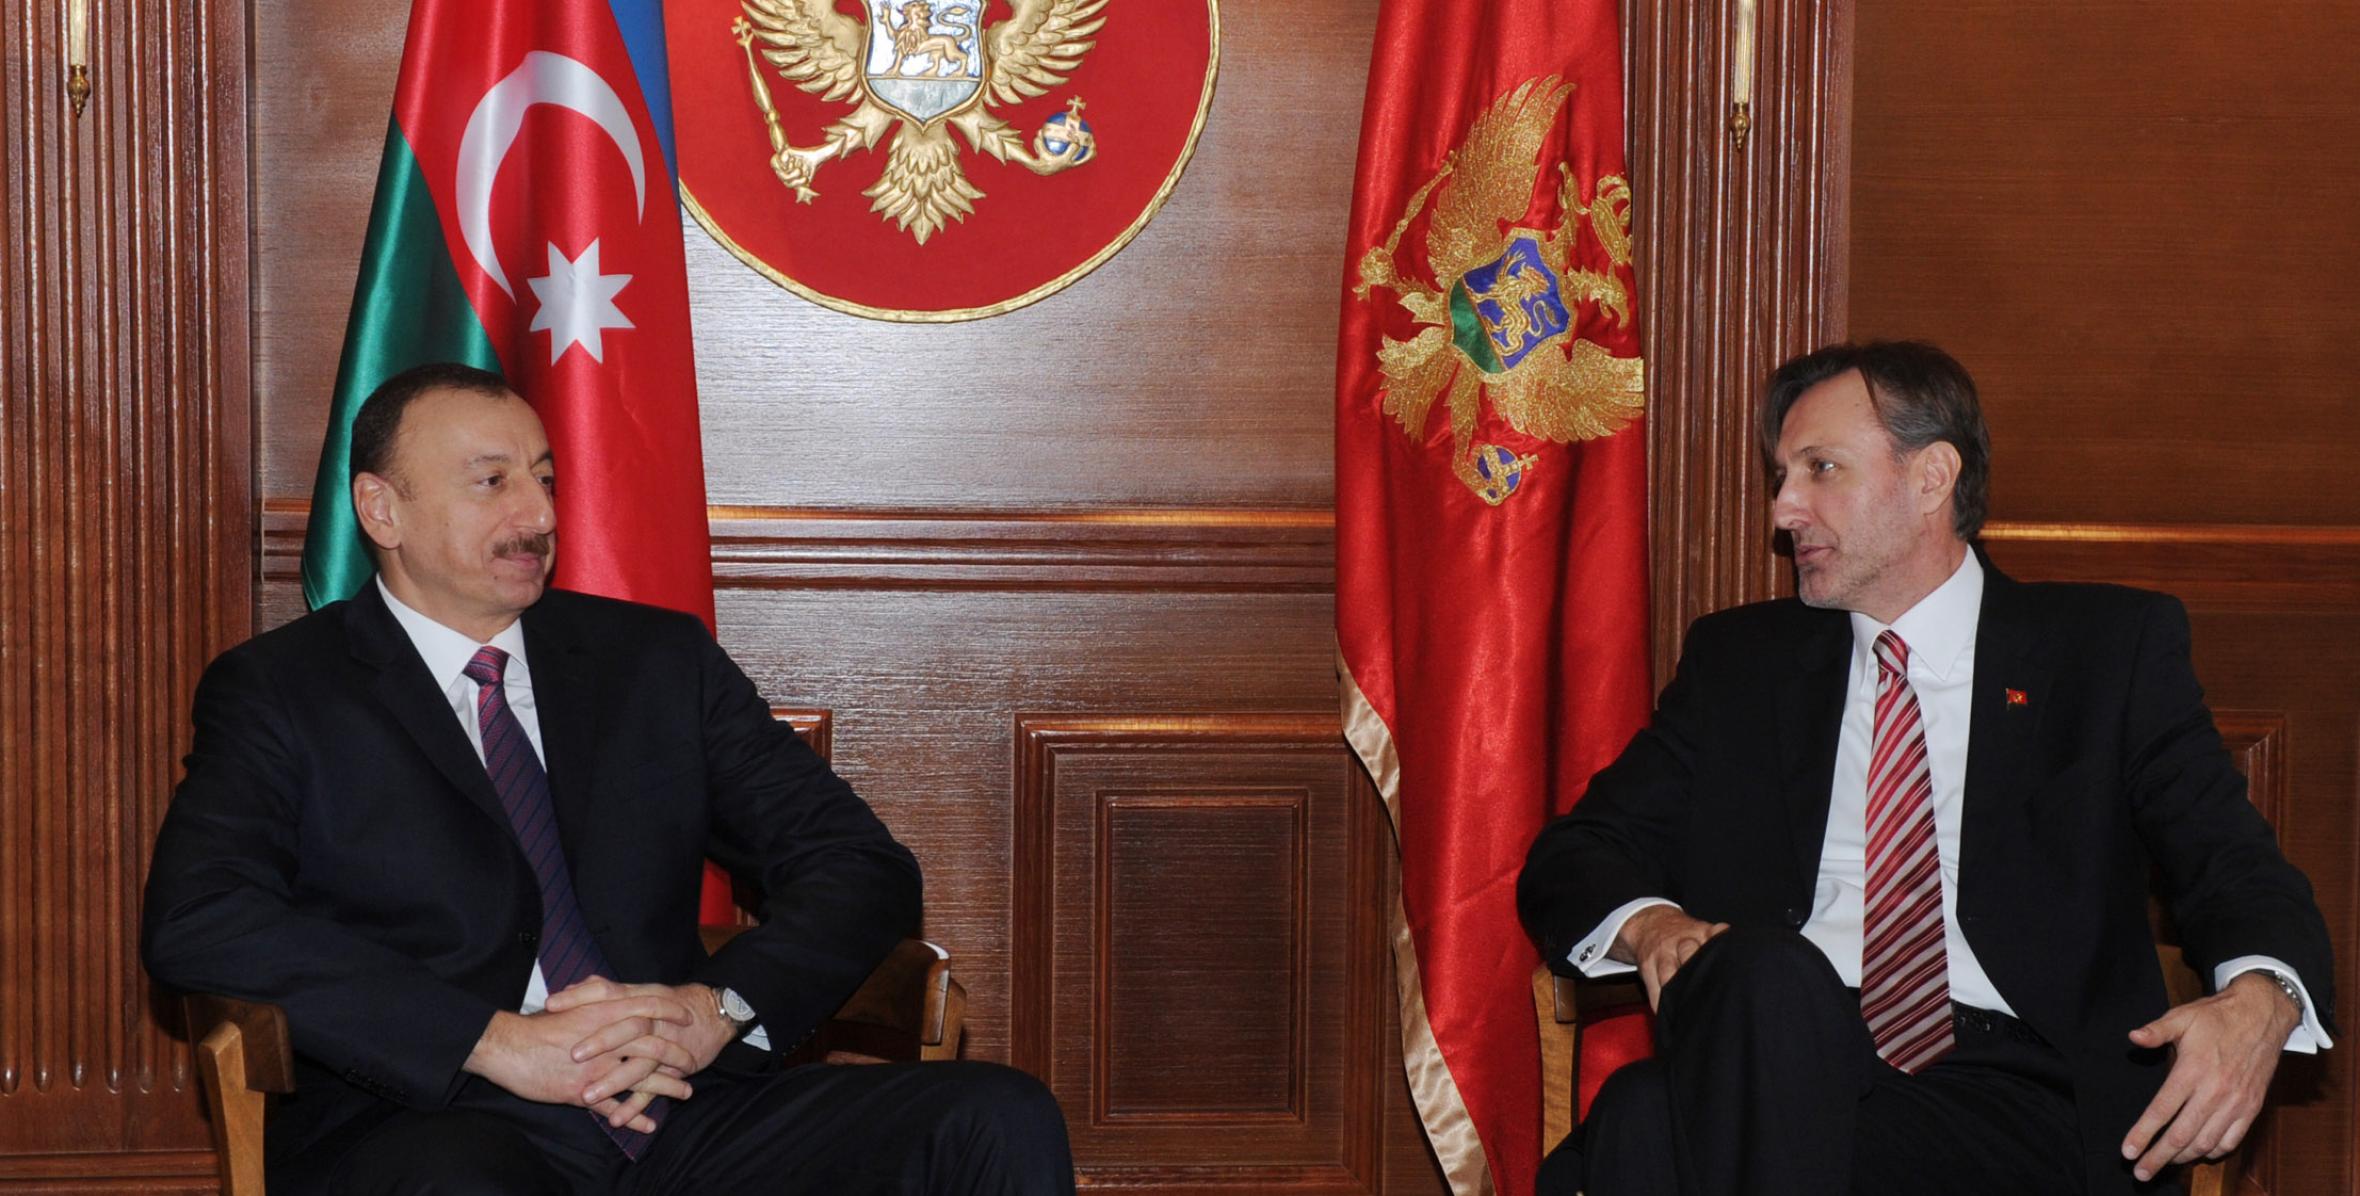 Ильхам Алиев встретился с председателем парламента Монтенегро Ранко Кривокапичем